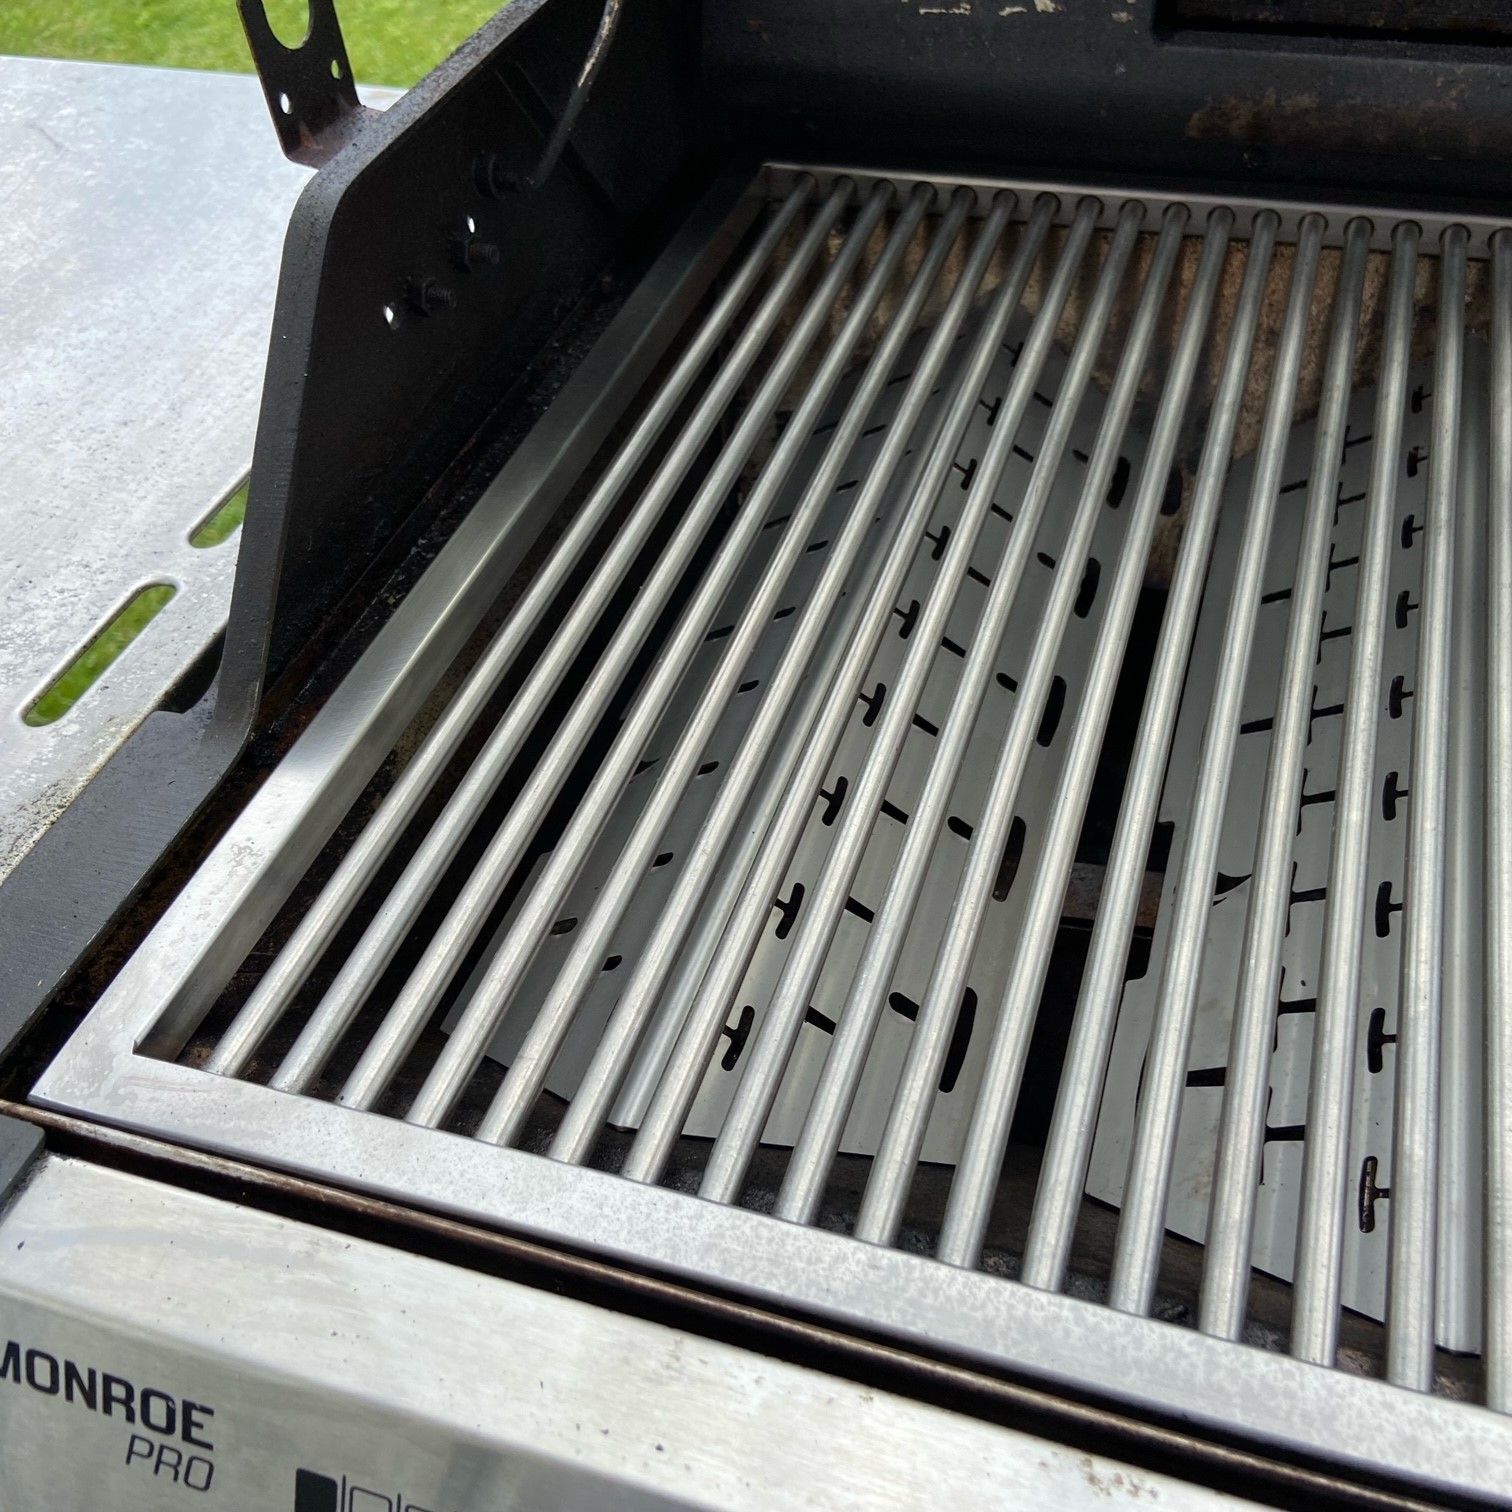 Stainless steel aroma rail for Enders Burner cover for Monroe 3 Pro SIK Turbo